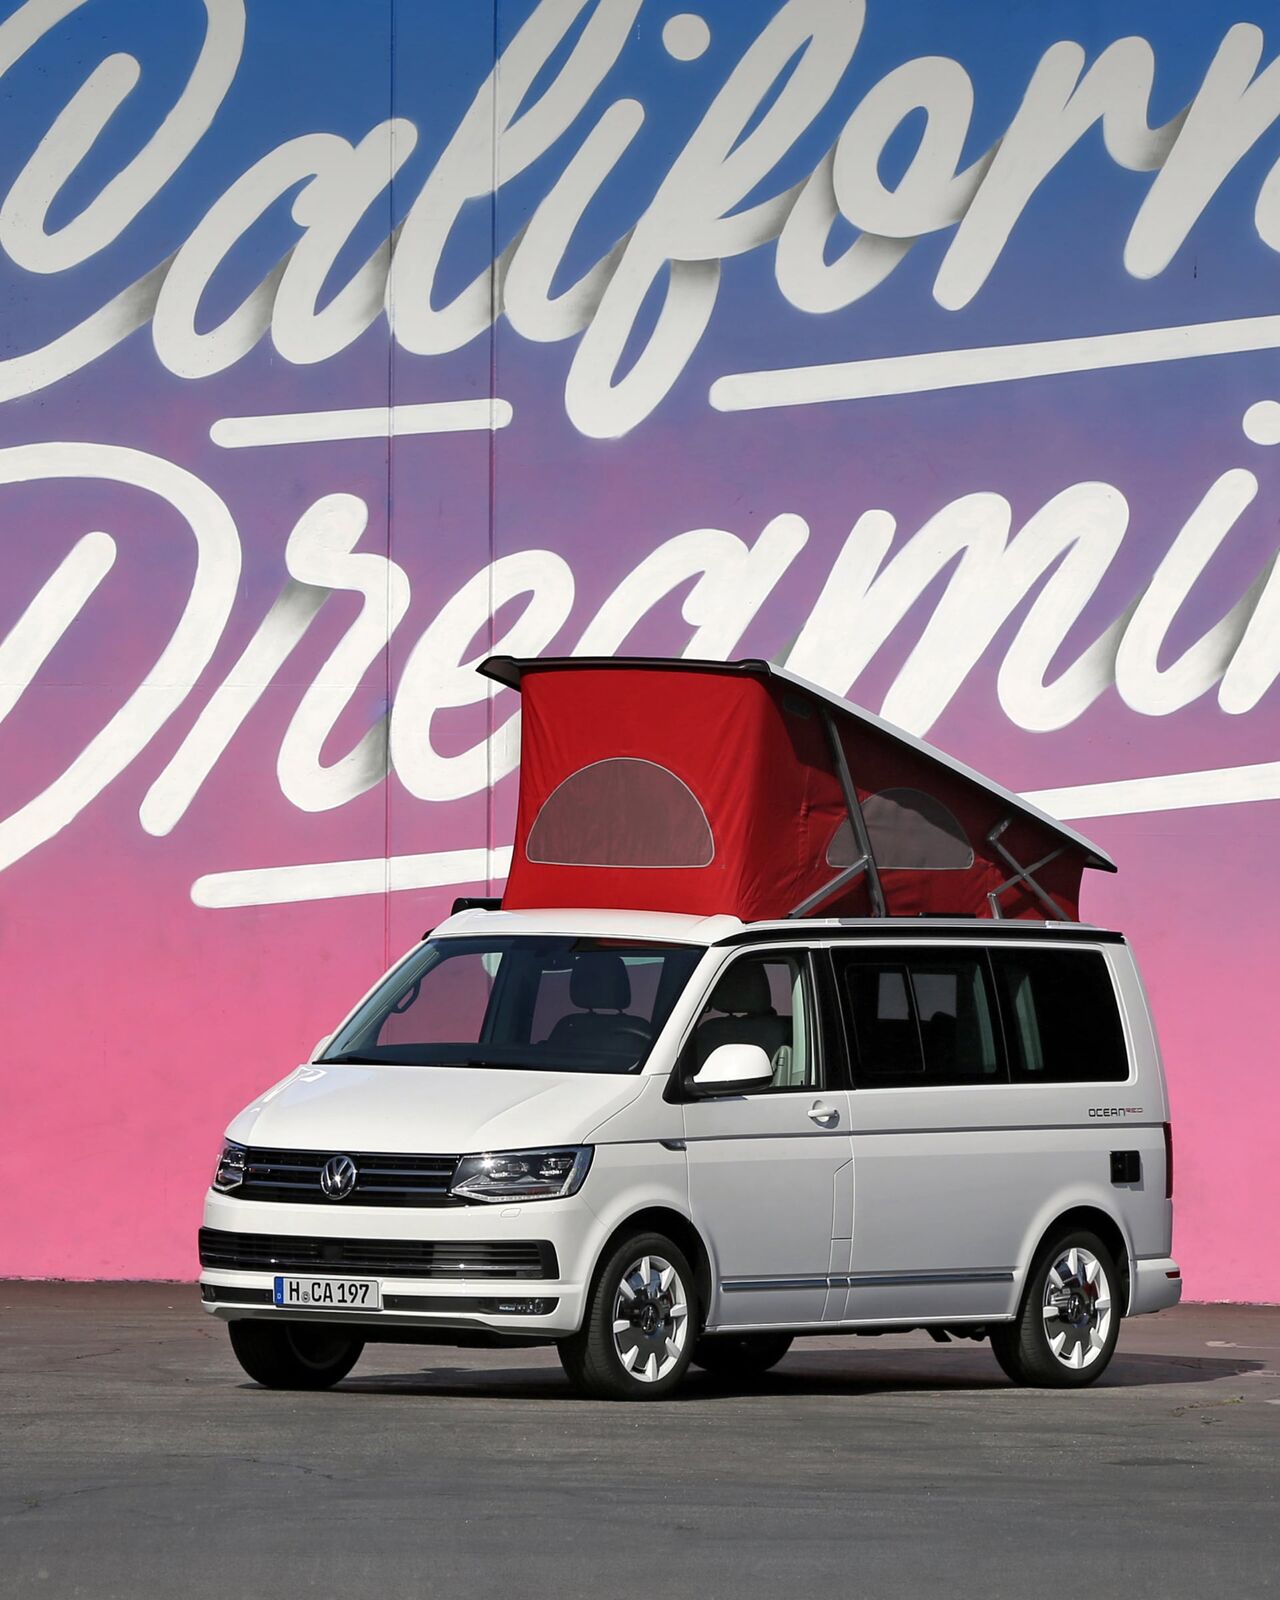 Uma Volkswagen California com telhado elevado está à frente da inscrição ilustrada "California Dreaming".